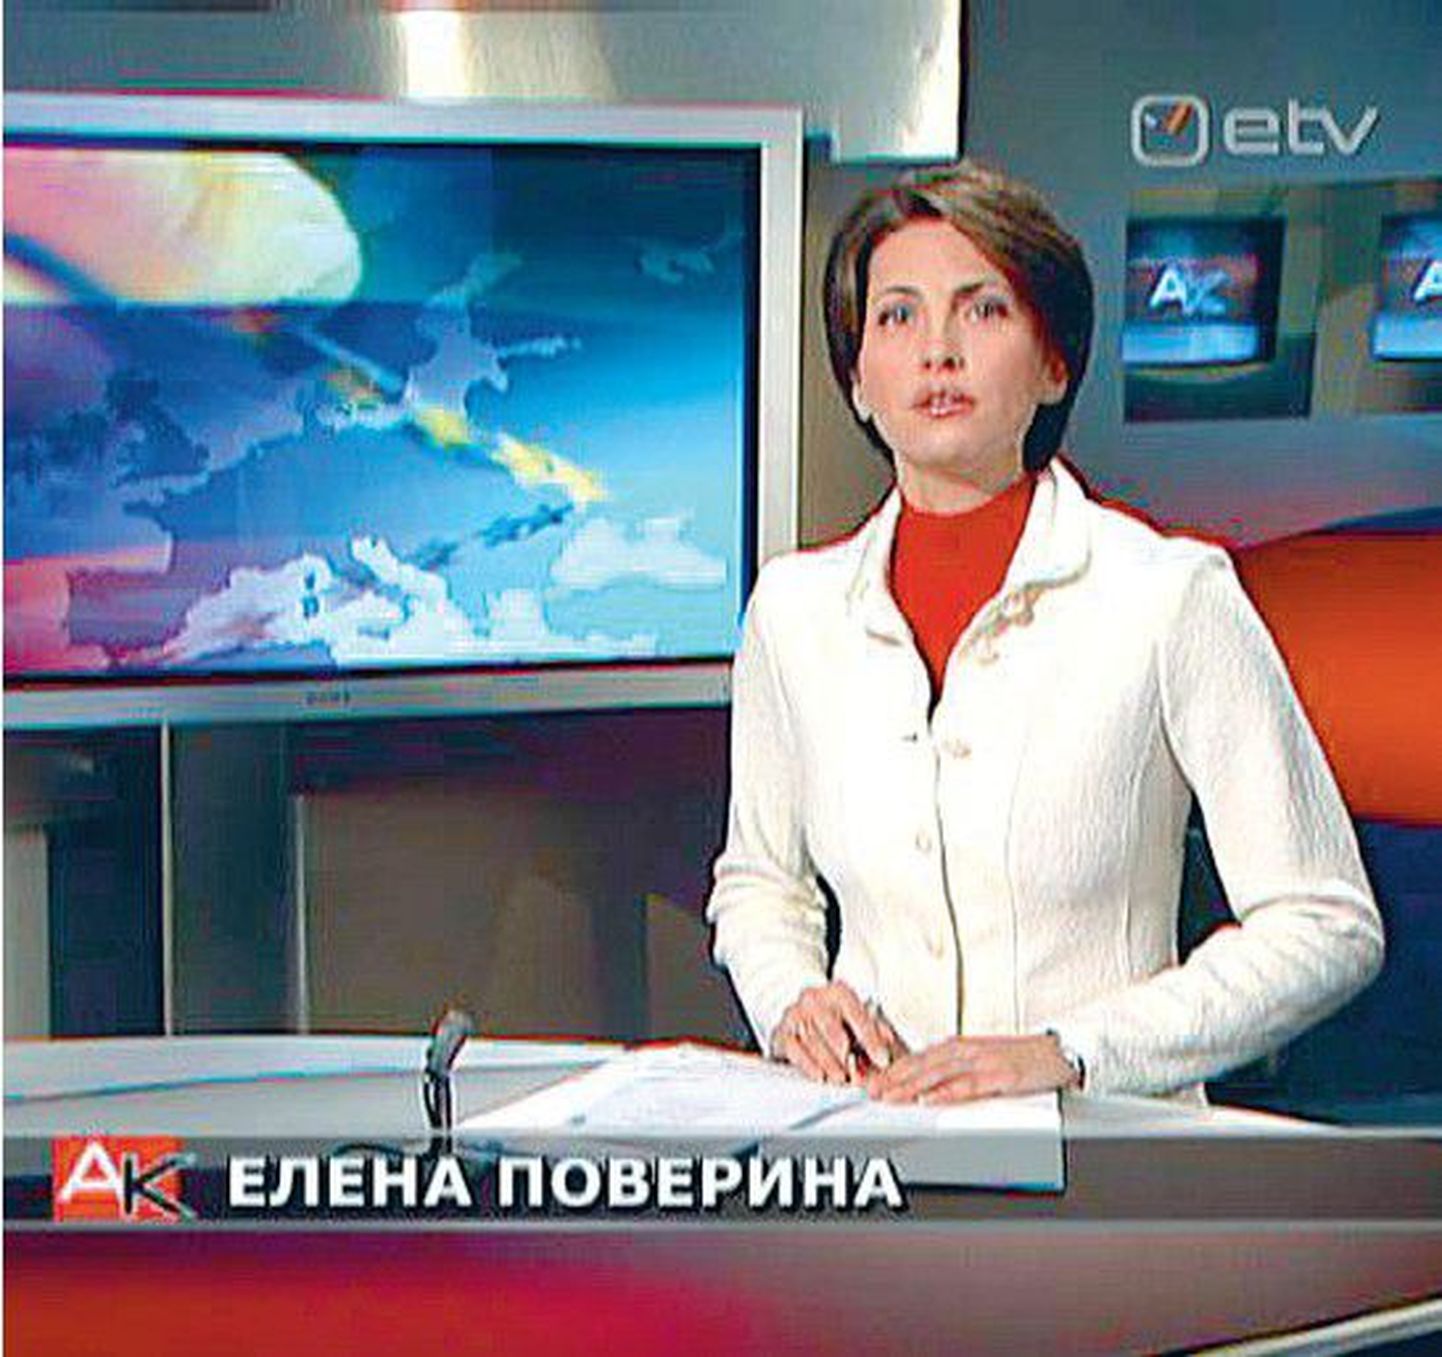 Selleks, et ETV venekeelsed saated ei piirduks 15 minutit kestva «Aktuaalse kaameraga», plaanib
rahvusringhääling käima lükata multikultuurse ja mitmekeelse ETV2.